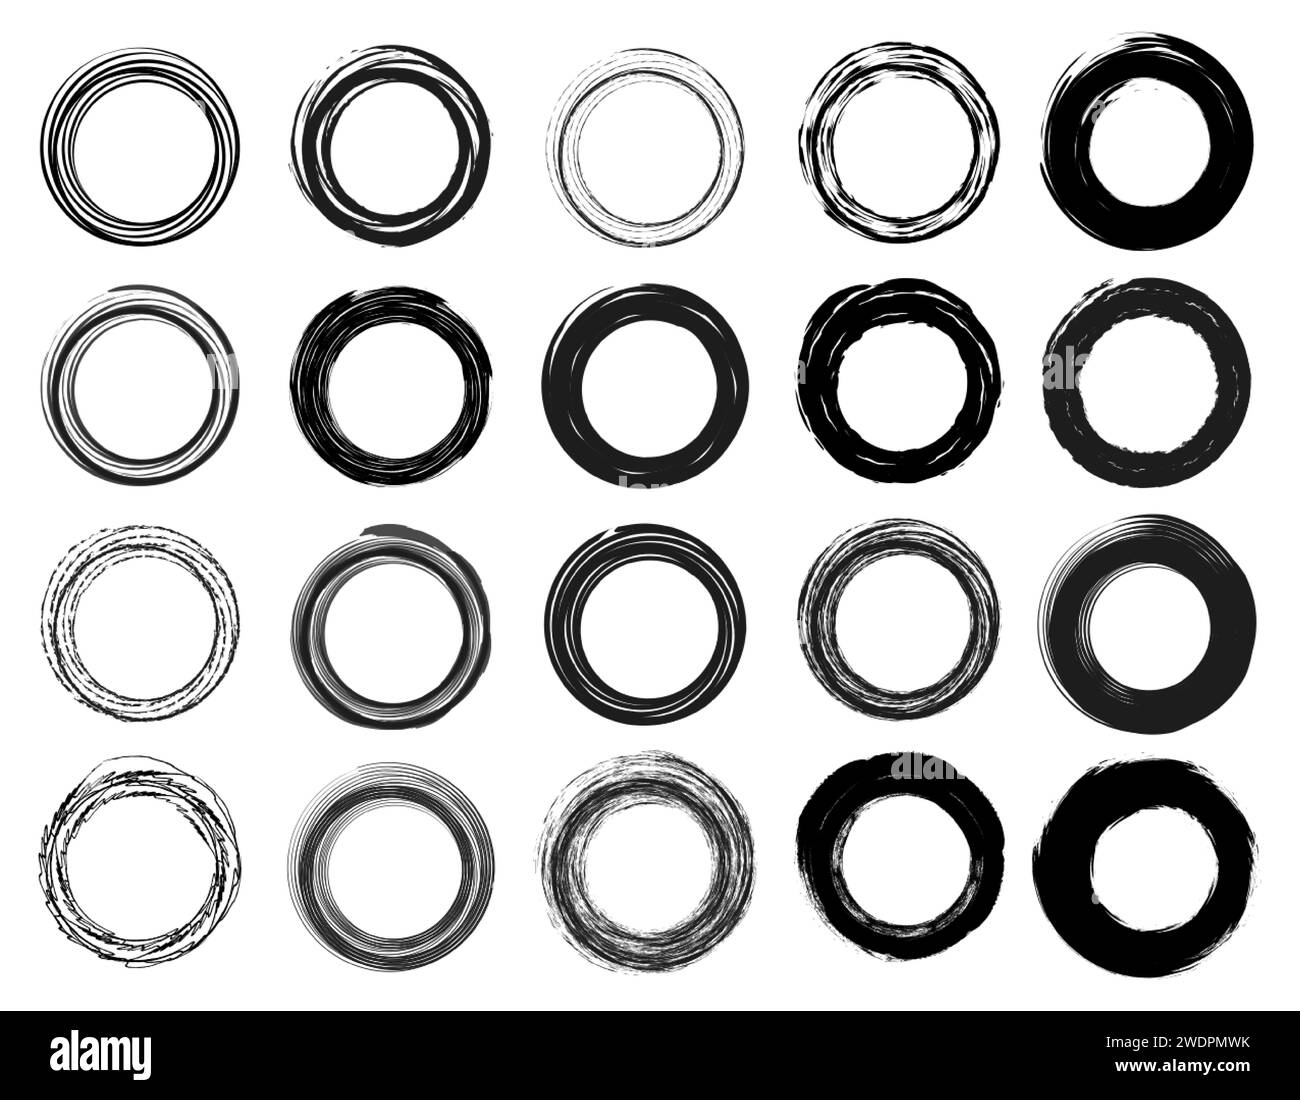 Collezione Grunge Distressed Circle Set. Cerchi stile traccia pennello bordo cornice. Linee nere a forma di cerchio, elementi di texture grunge isolati Illustrazione Vettoriale